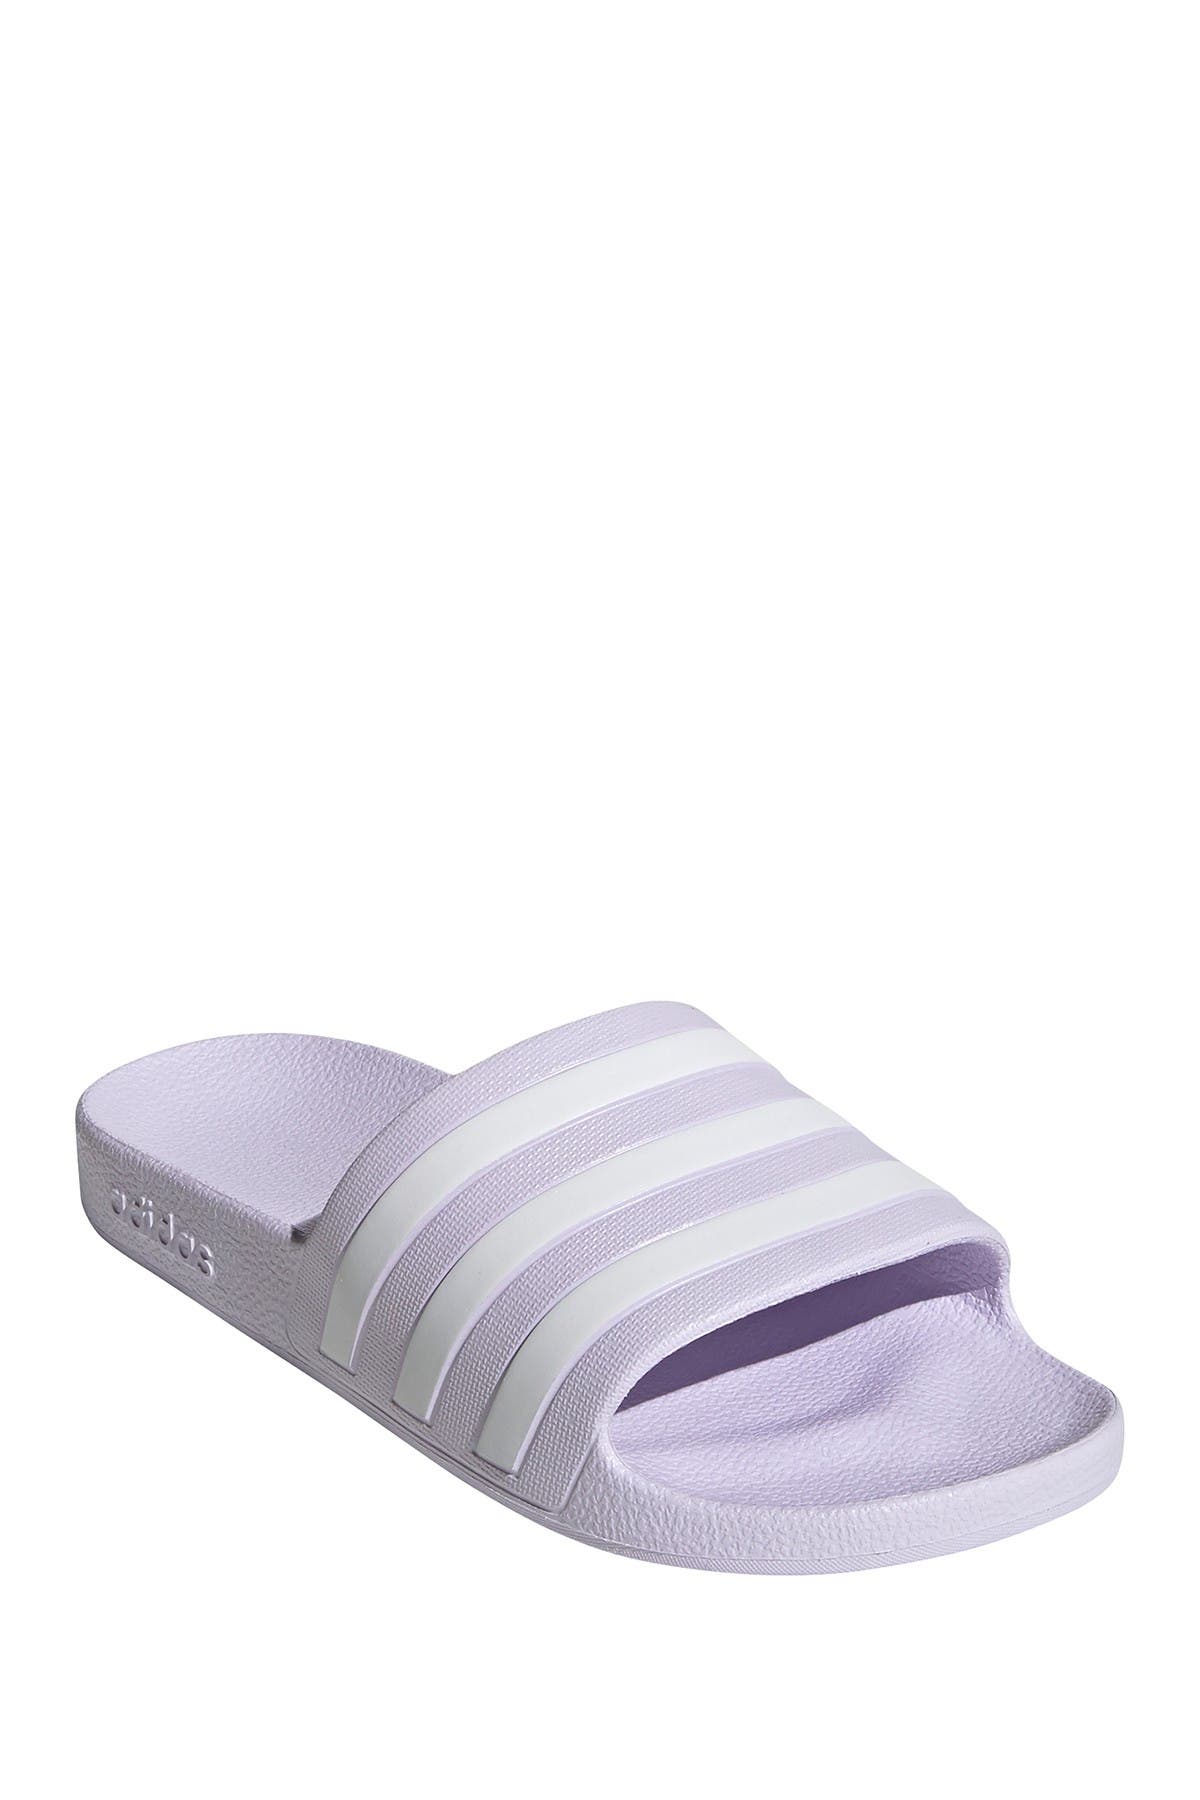 adidas | Adilette Aqua Slide Sandal 